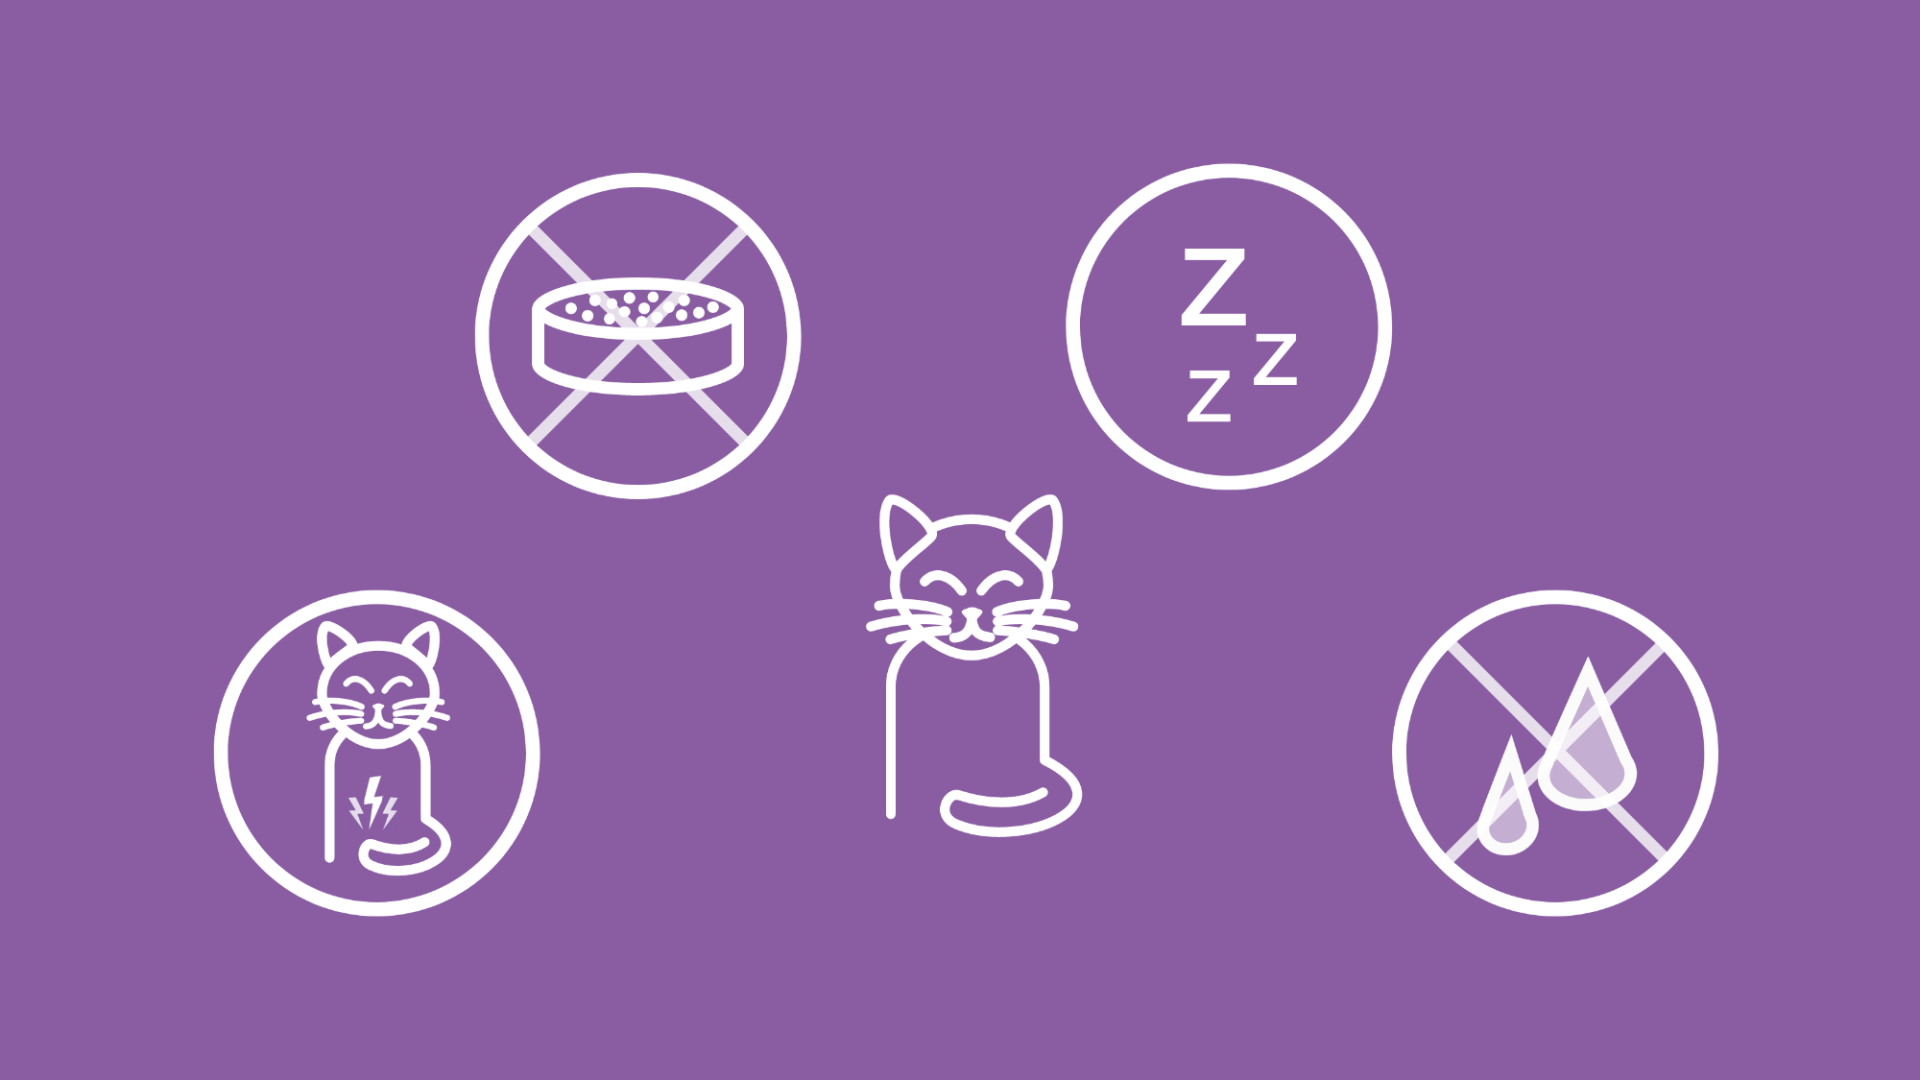 Um eine Katze herum sieht man mehrere mögliche Symptome für eine Verstopfung.